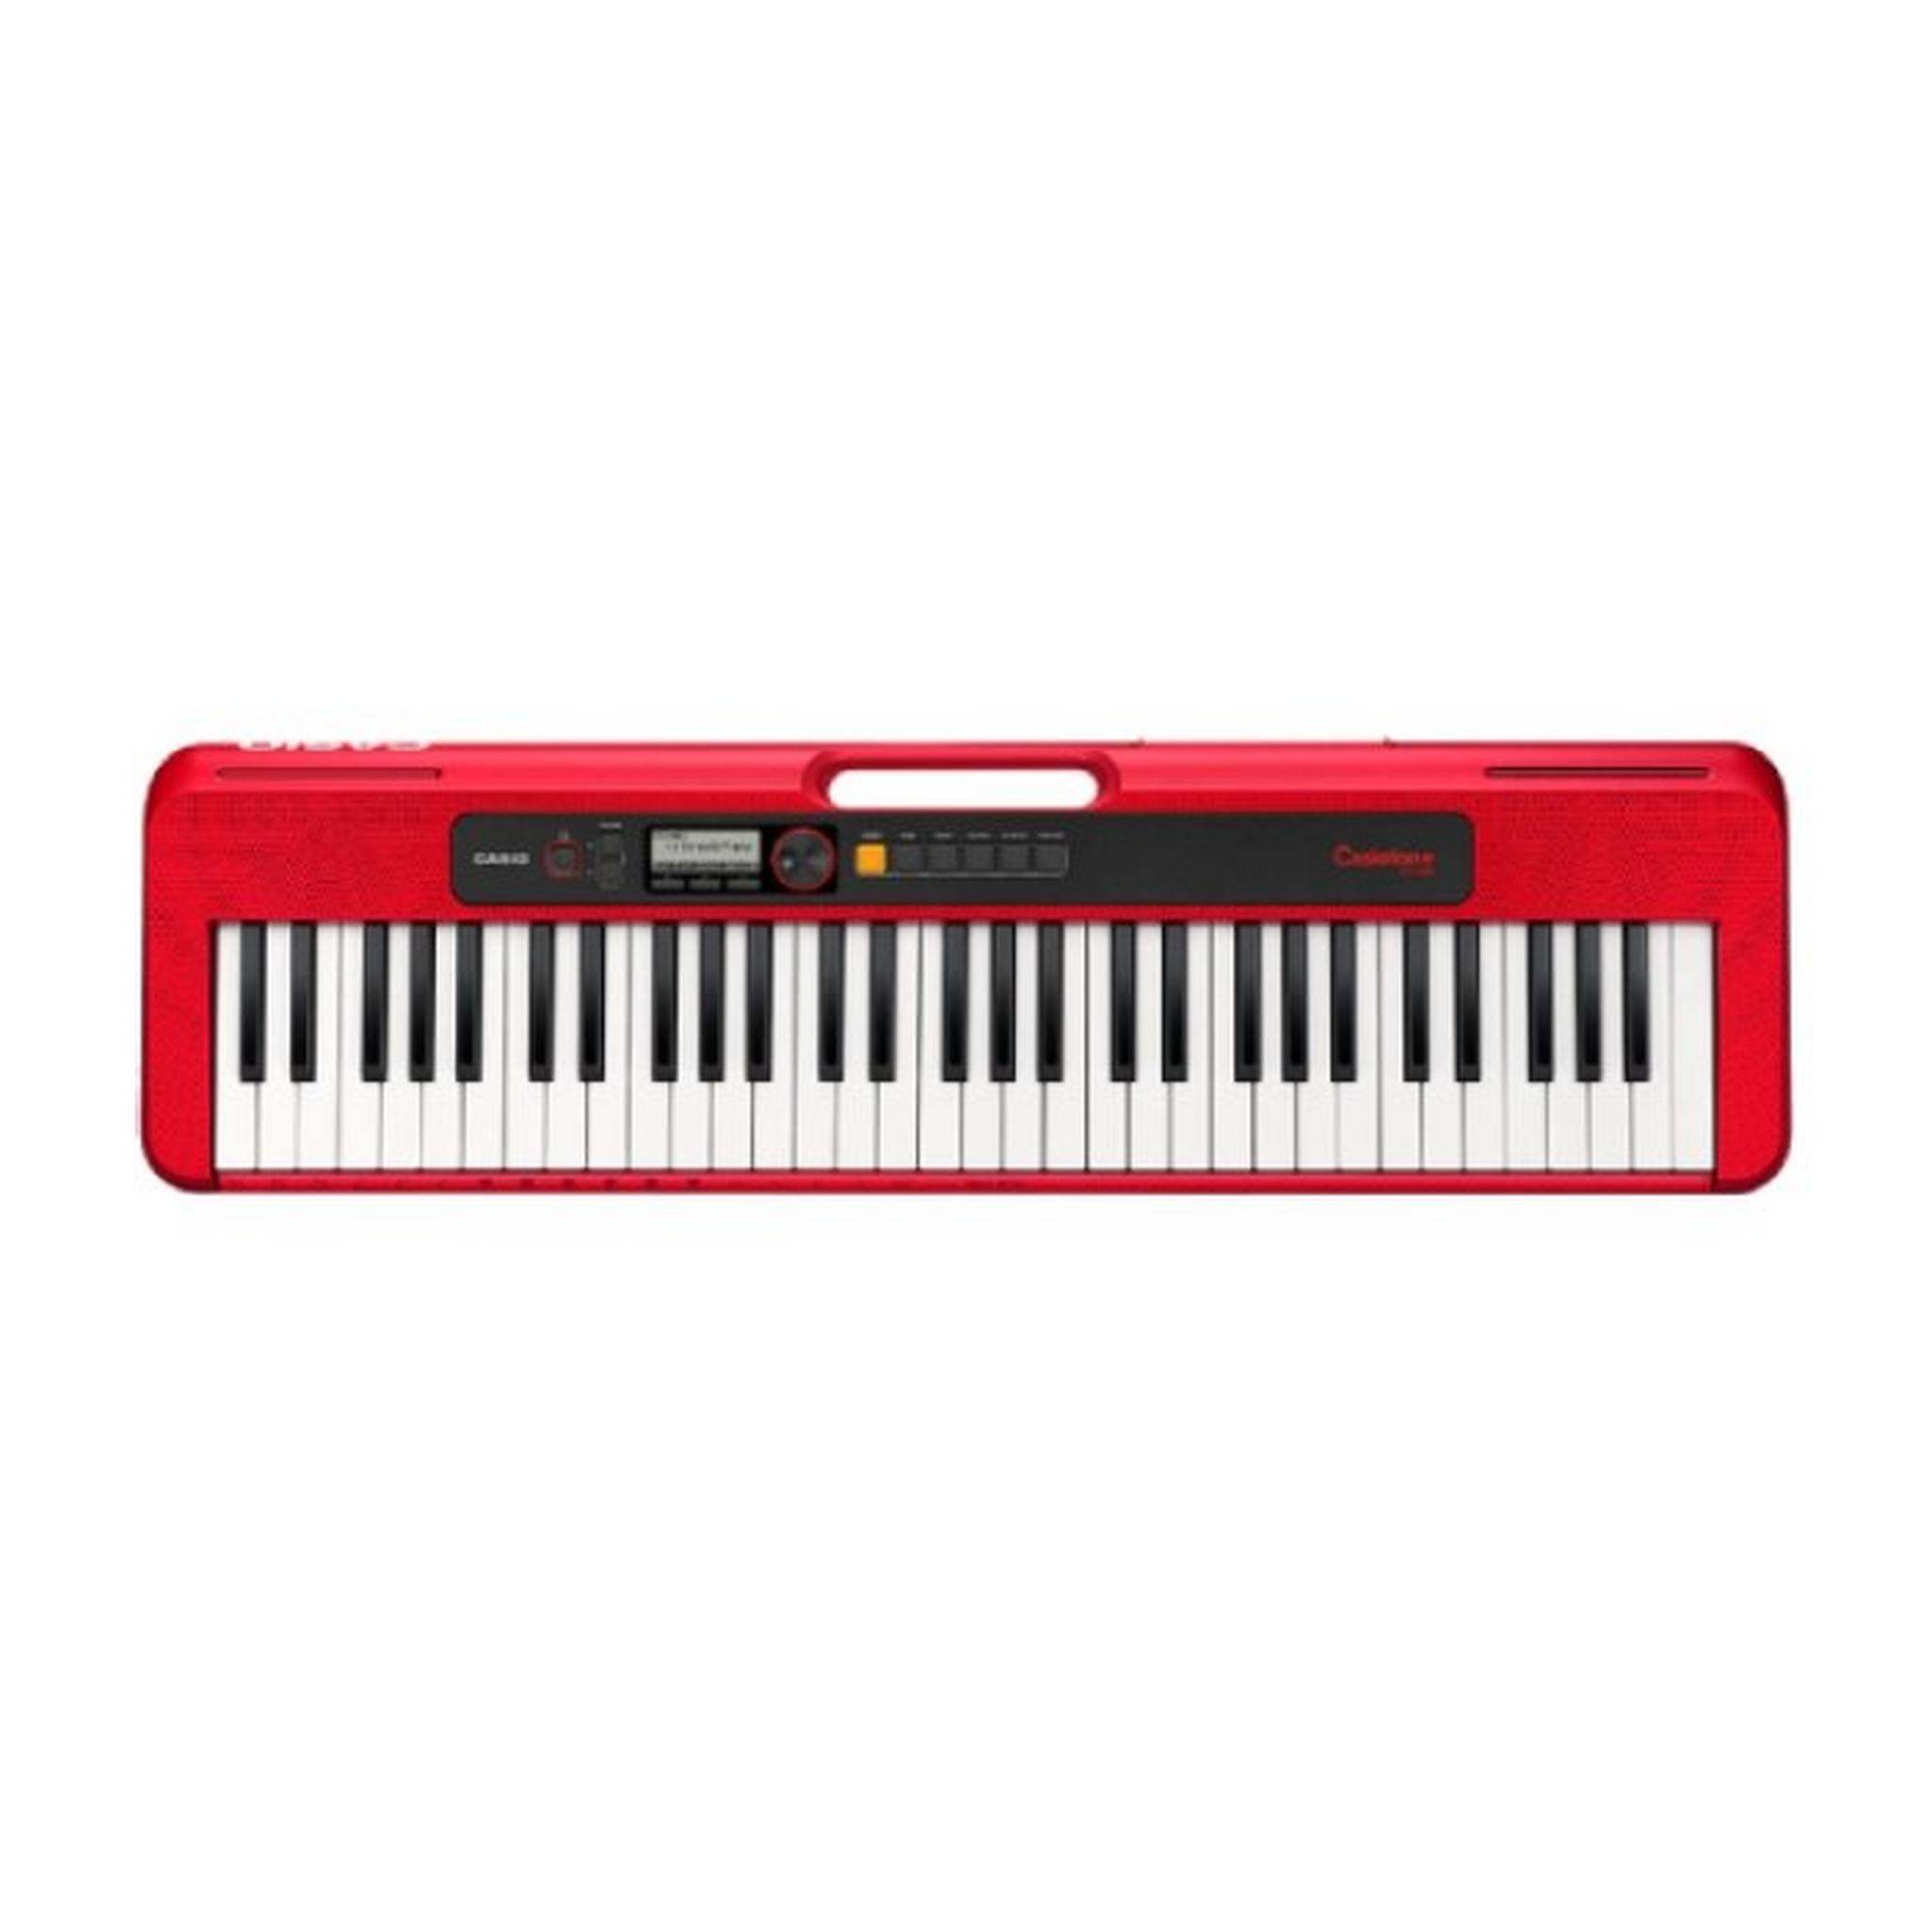 لوحة مفاتيح كاسيوتون CT-S200 الموسيقية 61 مفتاح من كاسيو - أحمر